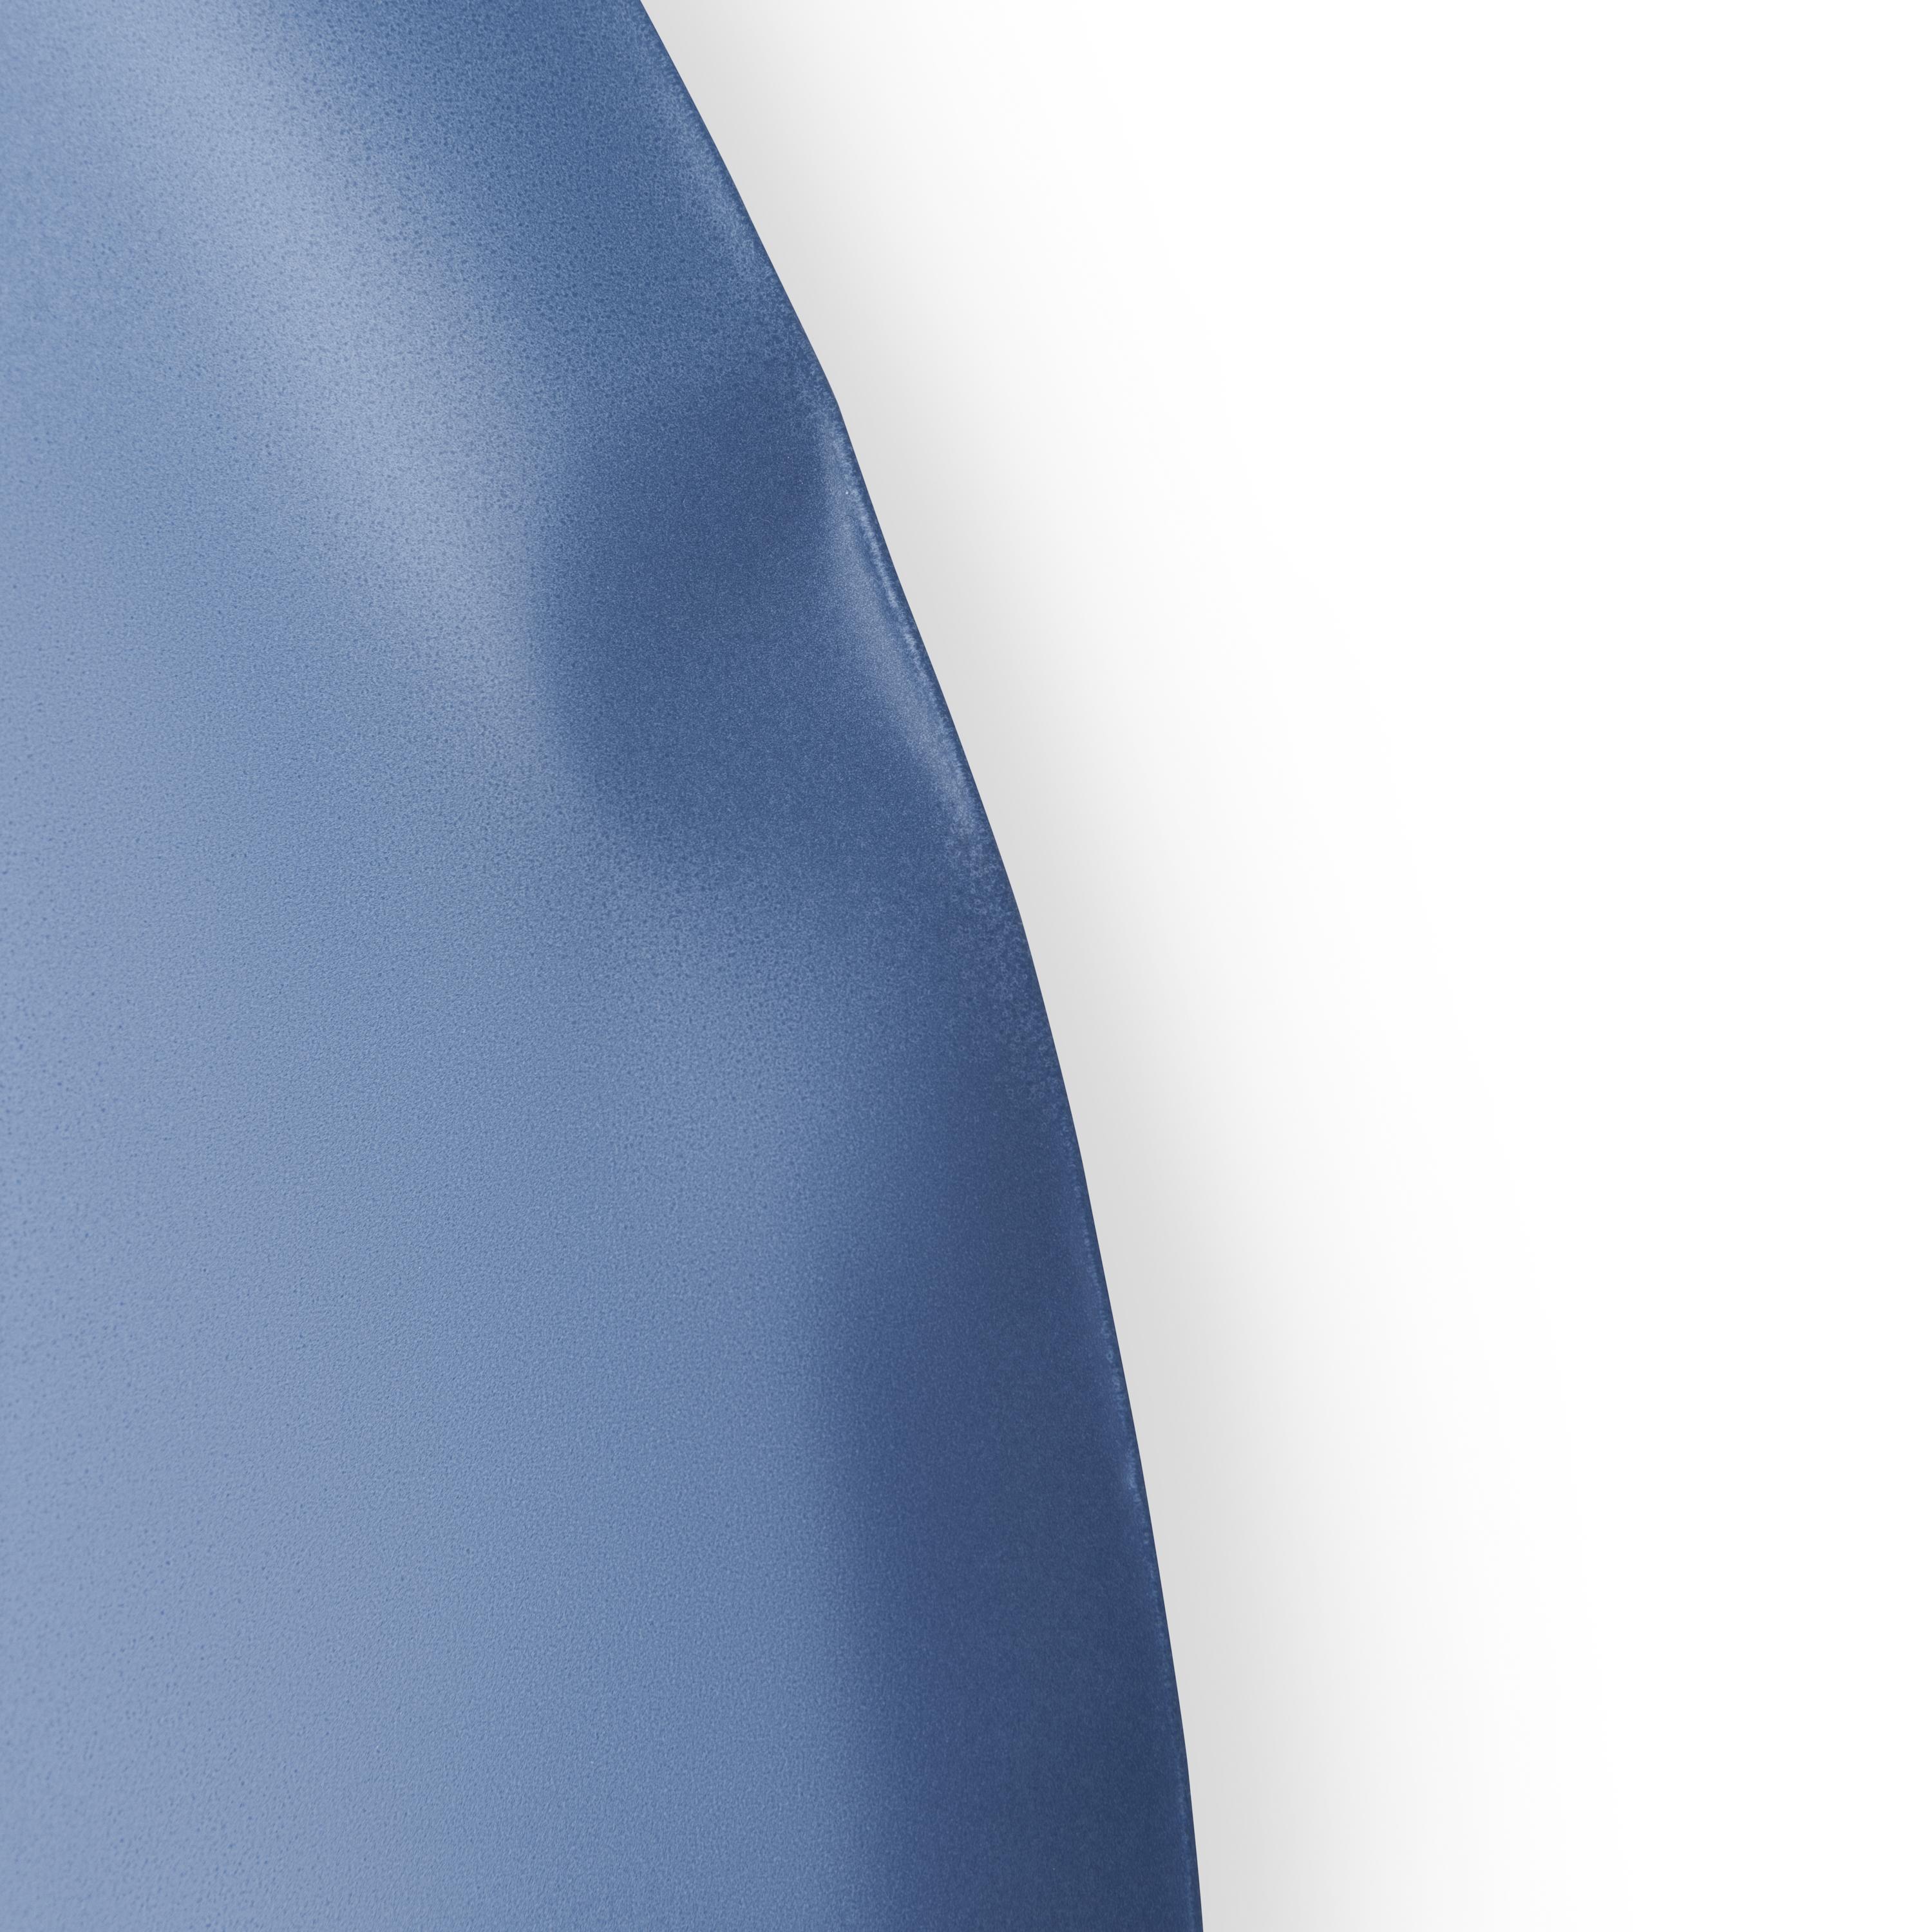 Miroir mural Tafla O3 bleu mat par Zieta
Dimensions : D6 x L79 x H124 cm 
Matériau : acier
Finitions disponibles : Egalement disponible dans d'autres tailles et couleurs. Veuillez nous contacter.

Empreintes en acier doux
La remise en question du